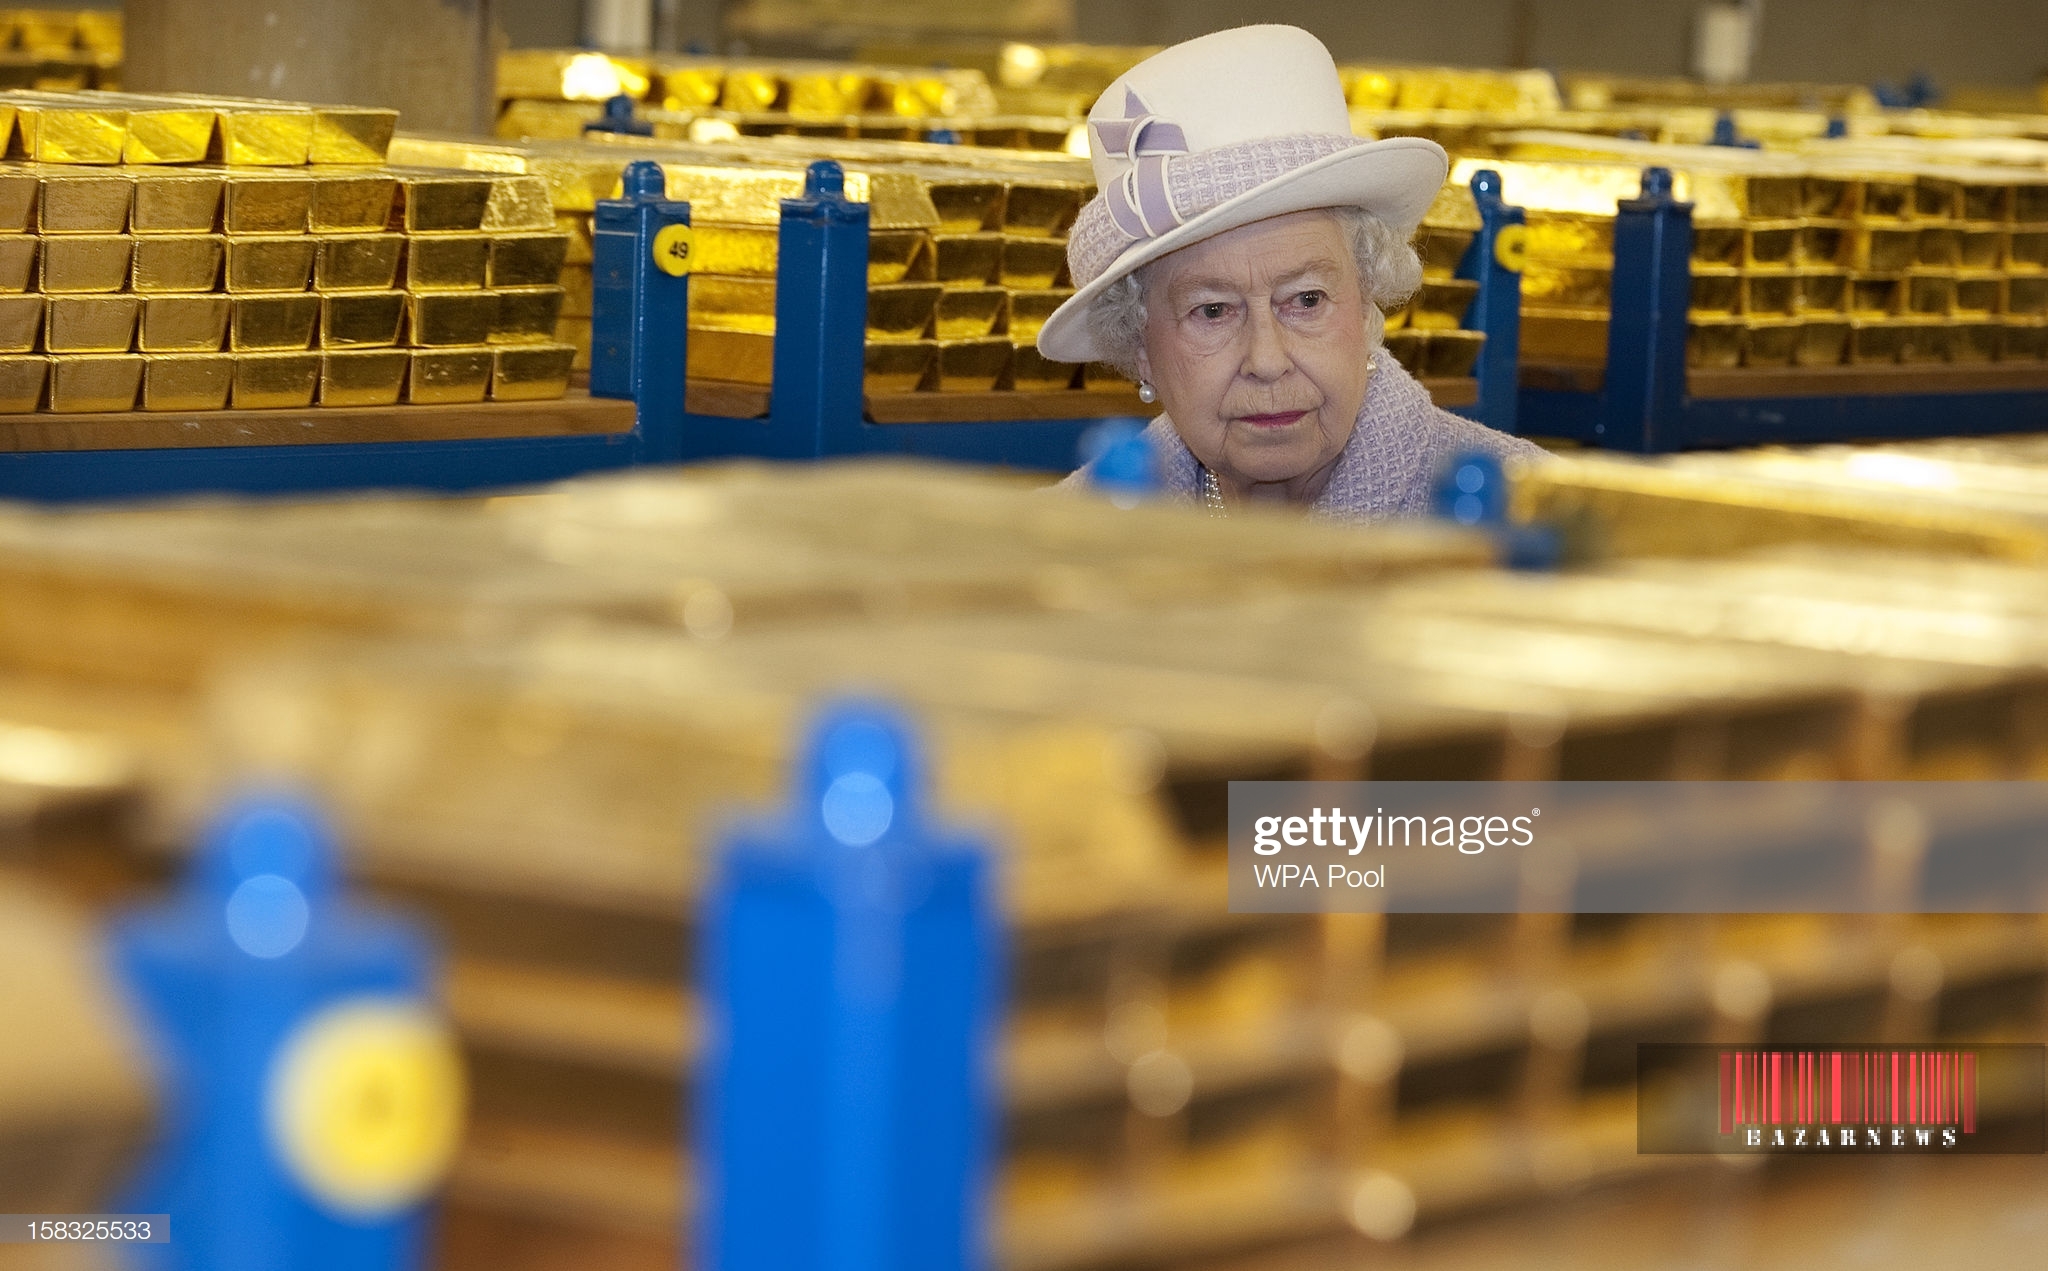 تصویر کمتر دیده شده ملکه انگلیس در بانک!